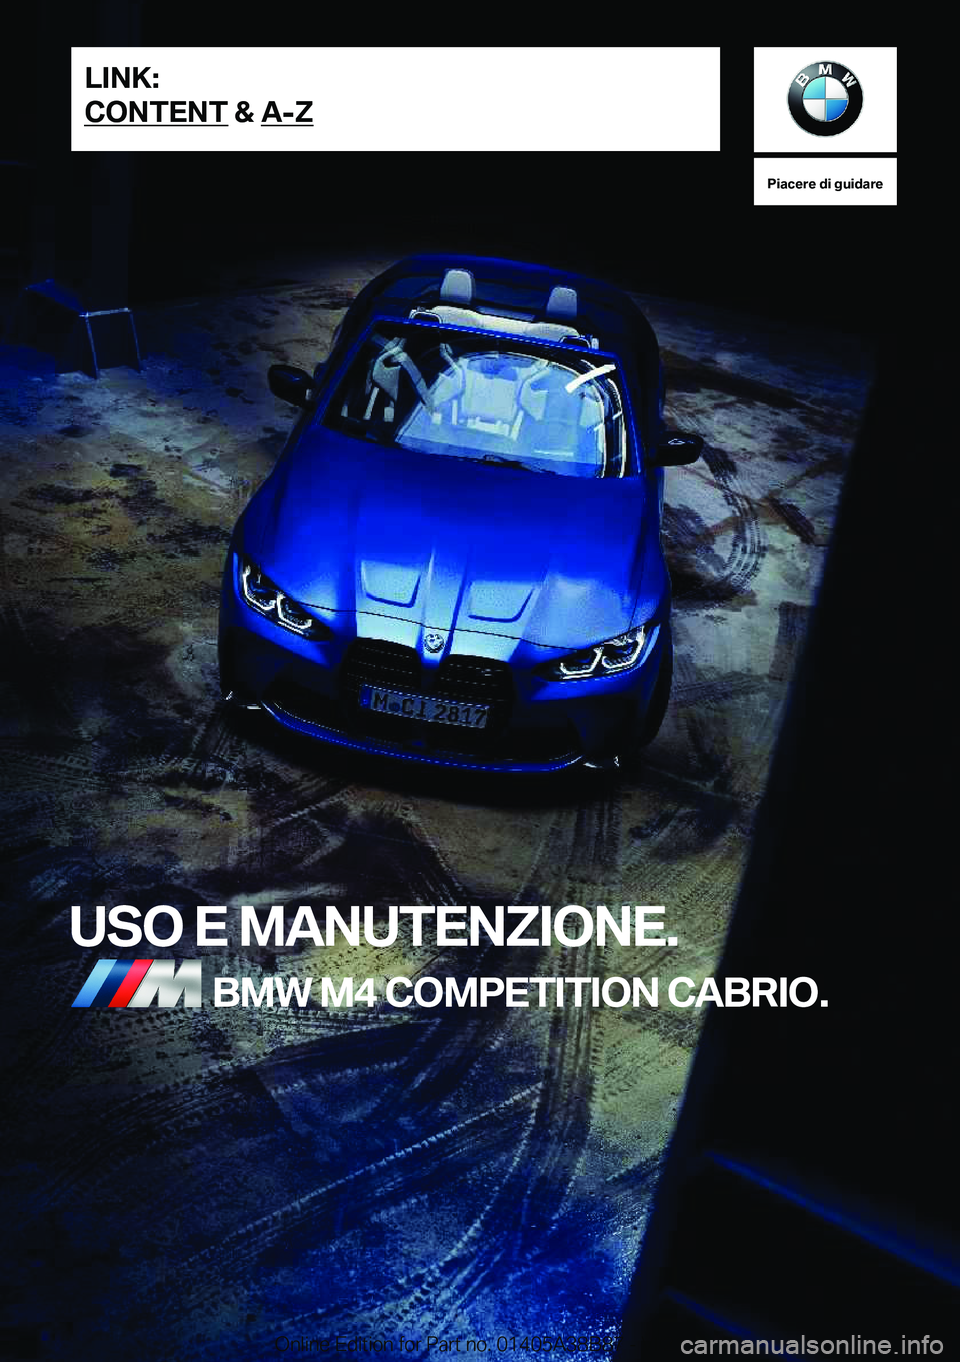 BMW M4 2022  Libretti Di Uso E manutenzione (in Italian) �P�i�a�c�e�r�e��d�i��g�u�i�d�a�r�e
�U�S�O��E��M�A�N�U�T�E�N�Z�I�O�N�E�.�B�M�W��M�4��C�O�M�P�E�T�I�T�I�O�N��C�A�B�R�I�O�.�L�I�N�K�:
�C�O�N�T�E�N�T��&��A�-�Z�O�n�l�i�n�e��E�d�i�t�i�o�n��f�o�r